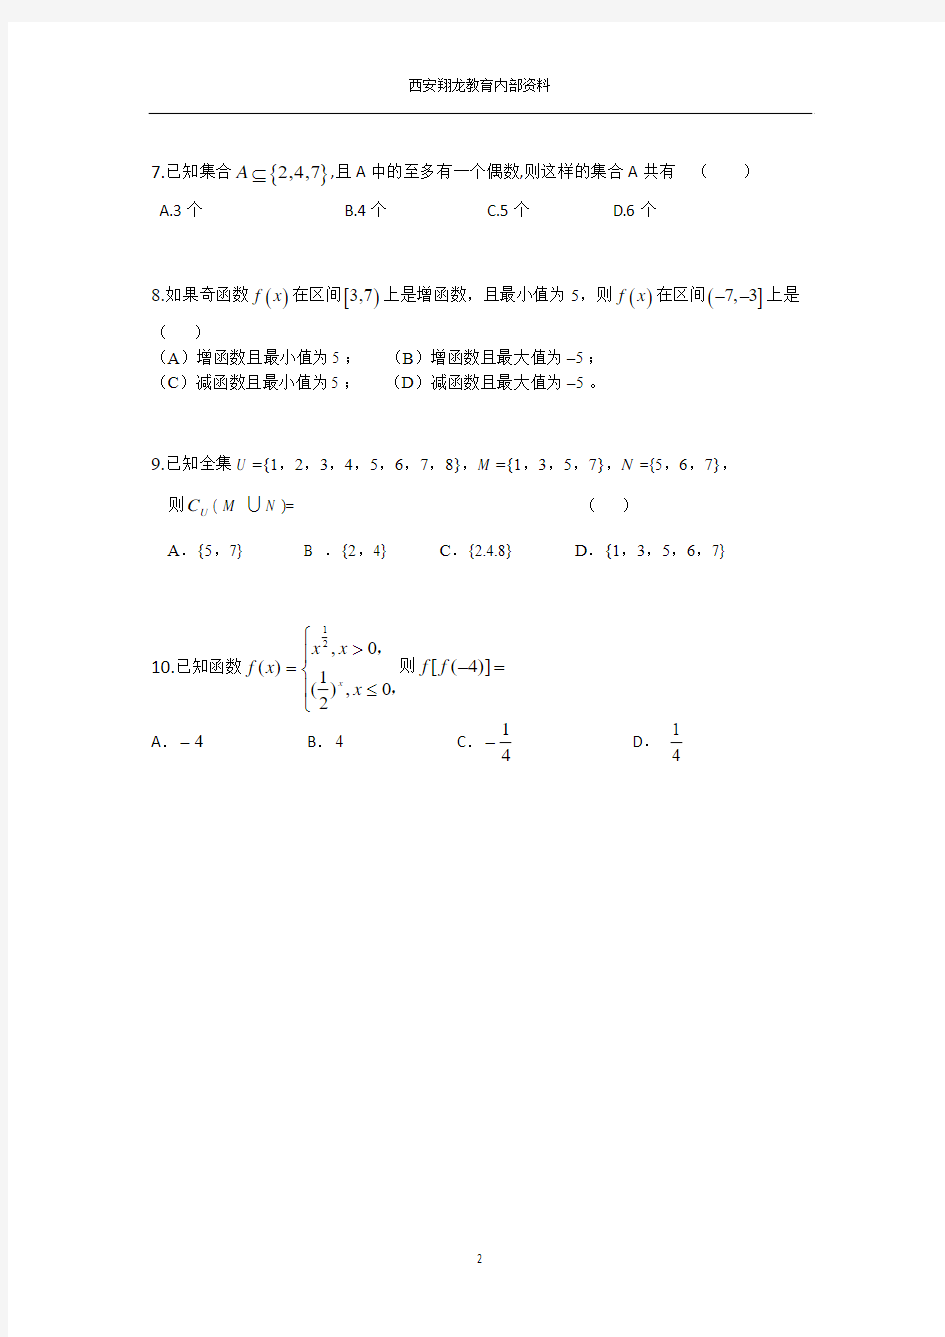 翔龙教育2012年_高一暑期预科班数学测试题(赵先举整理)